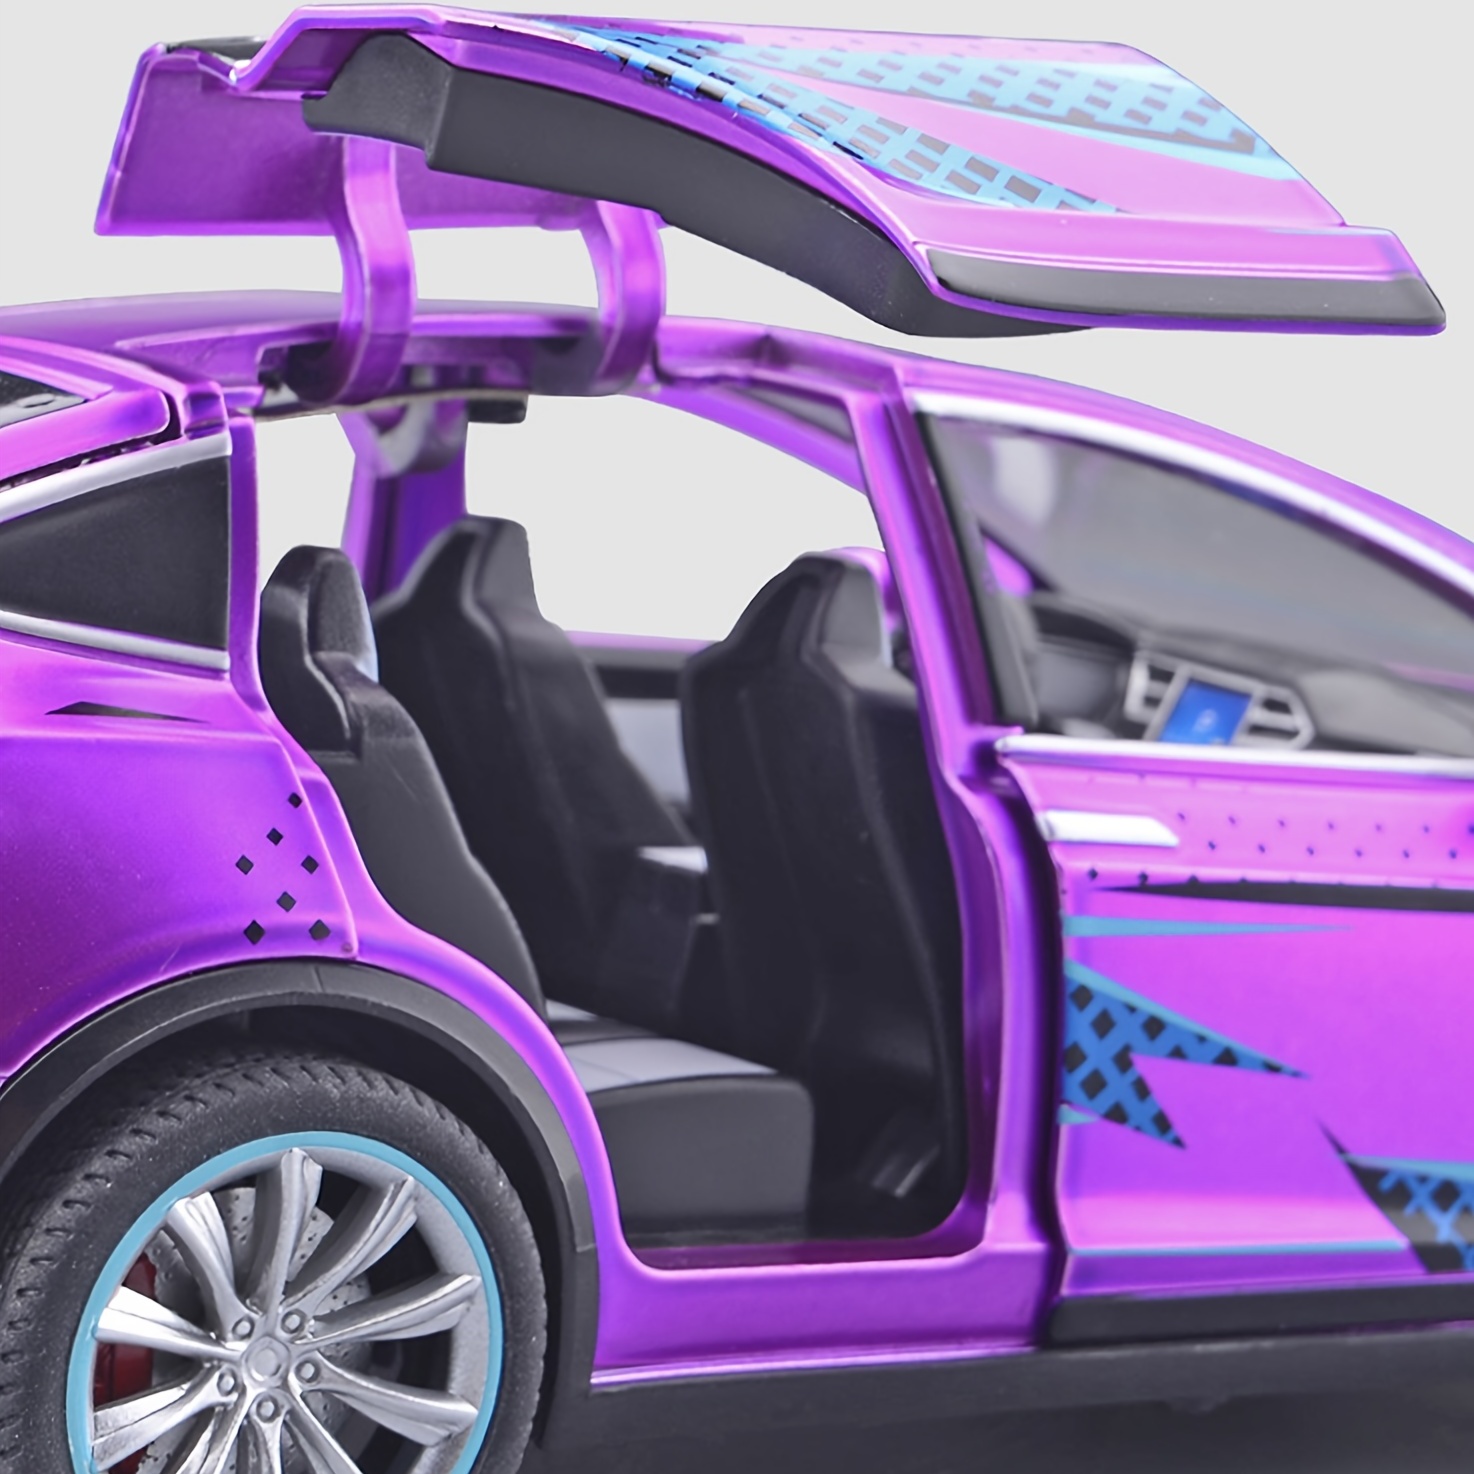 Véhicule Tesla modèle X90 tire en arrière le jouet de voiture (bleu)